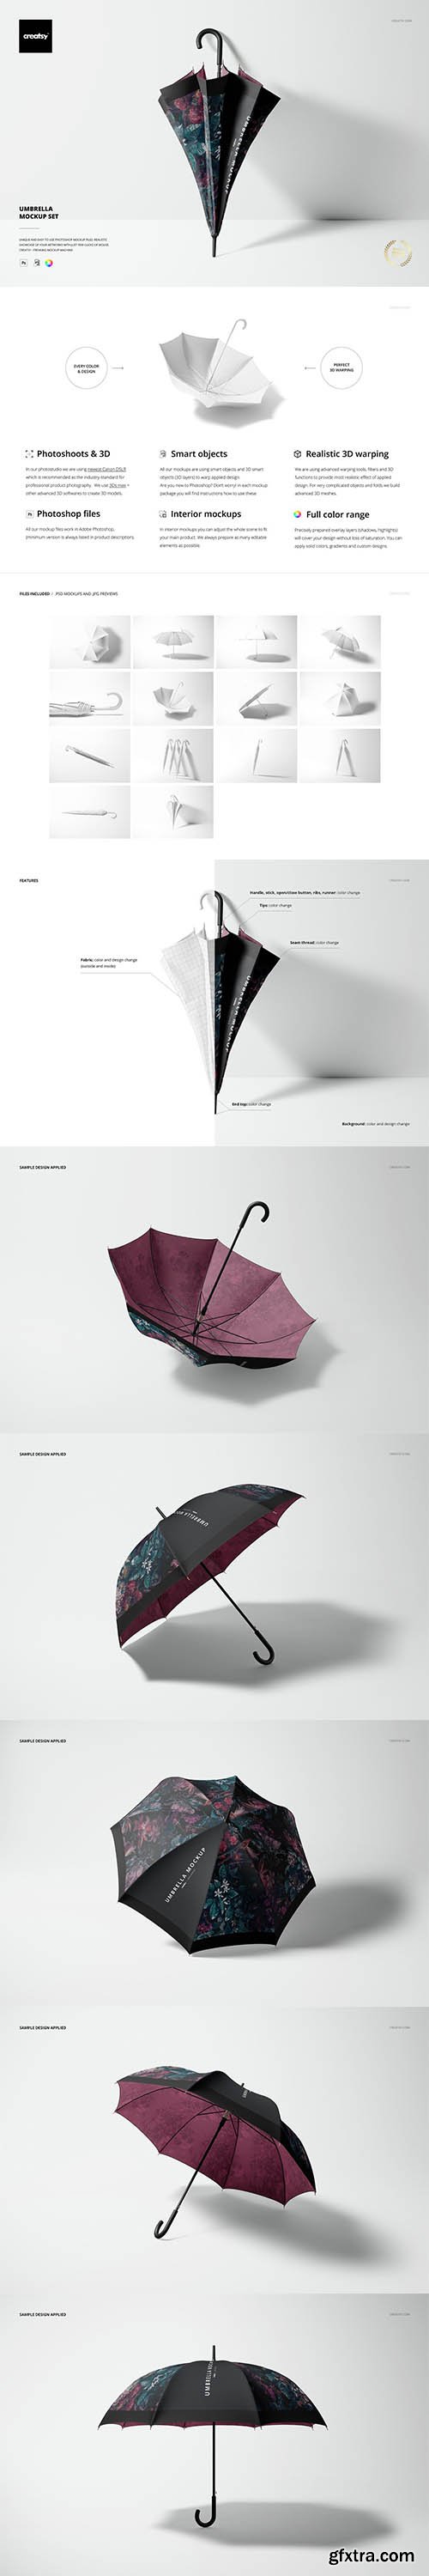 CreativeMarket - Umbrella Mockup Set 6817546